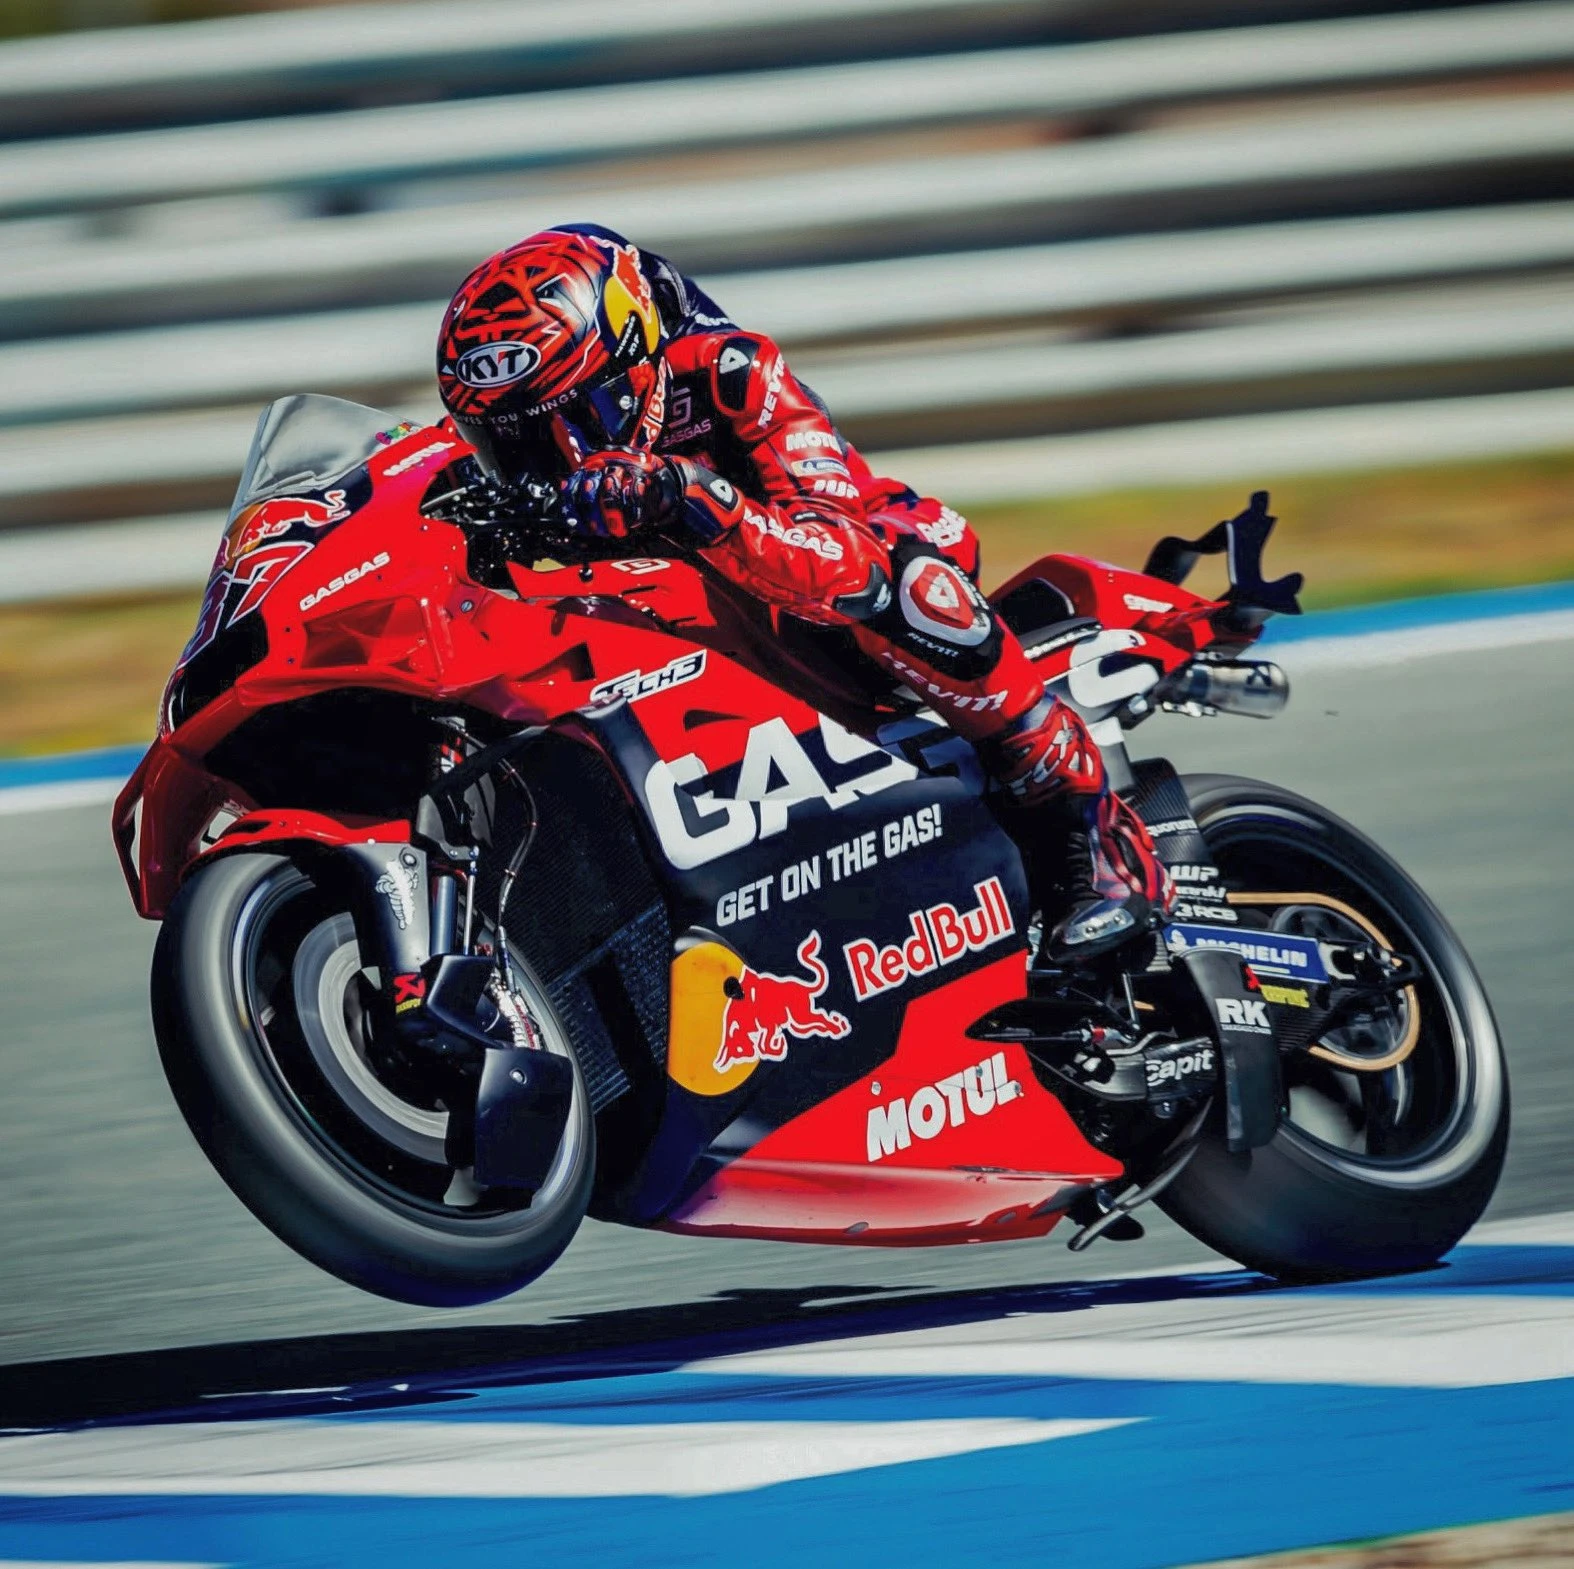 MotoGP Jerez Testi: Bu motosikletten pozitif bir şey alamayız gallery image 4